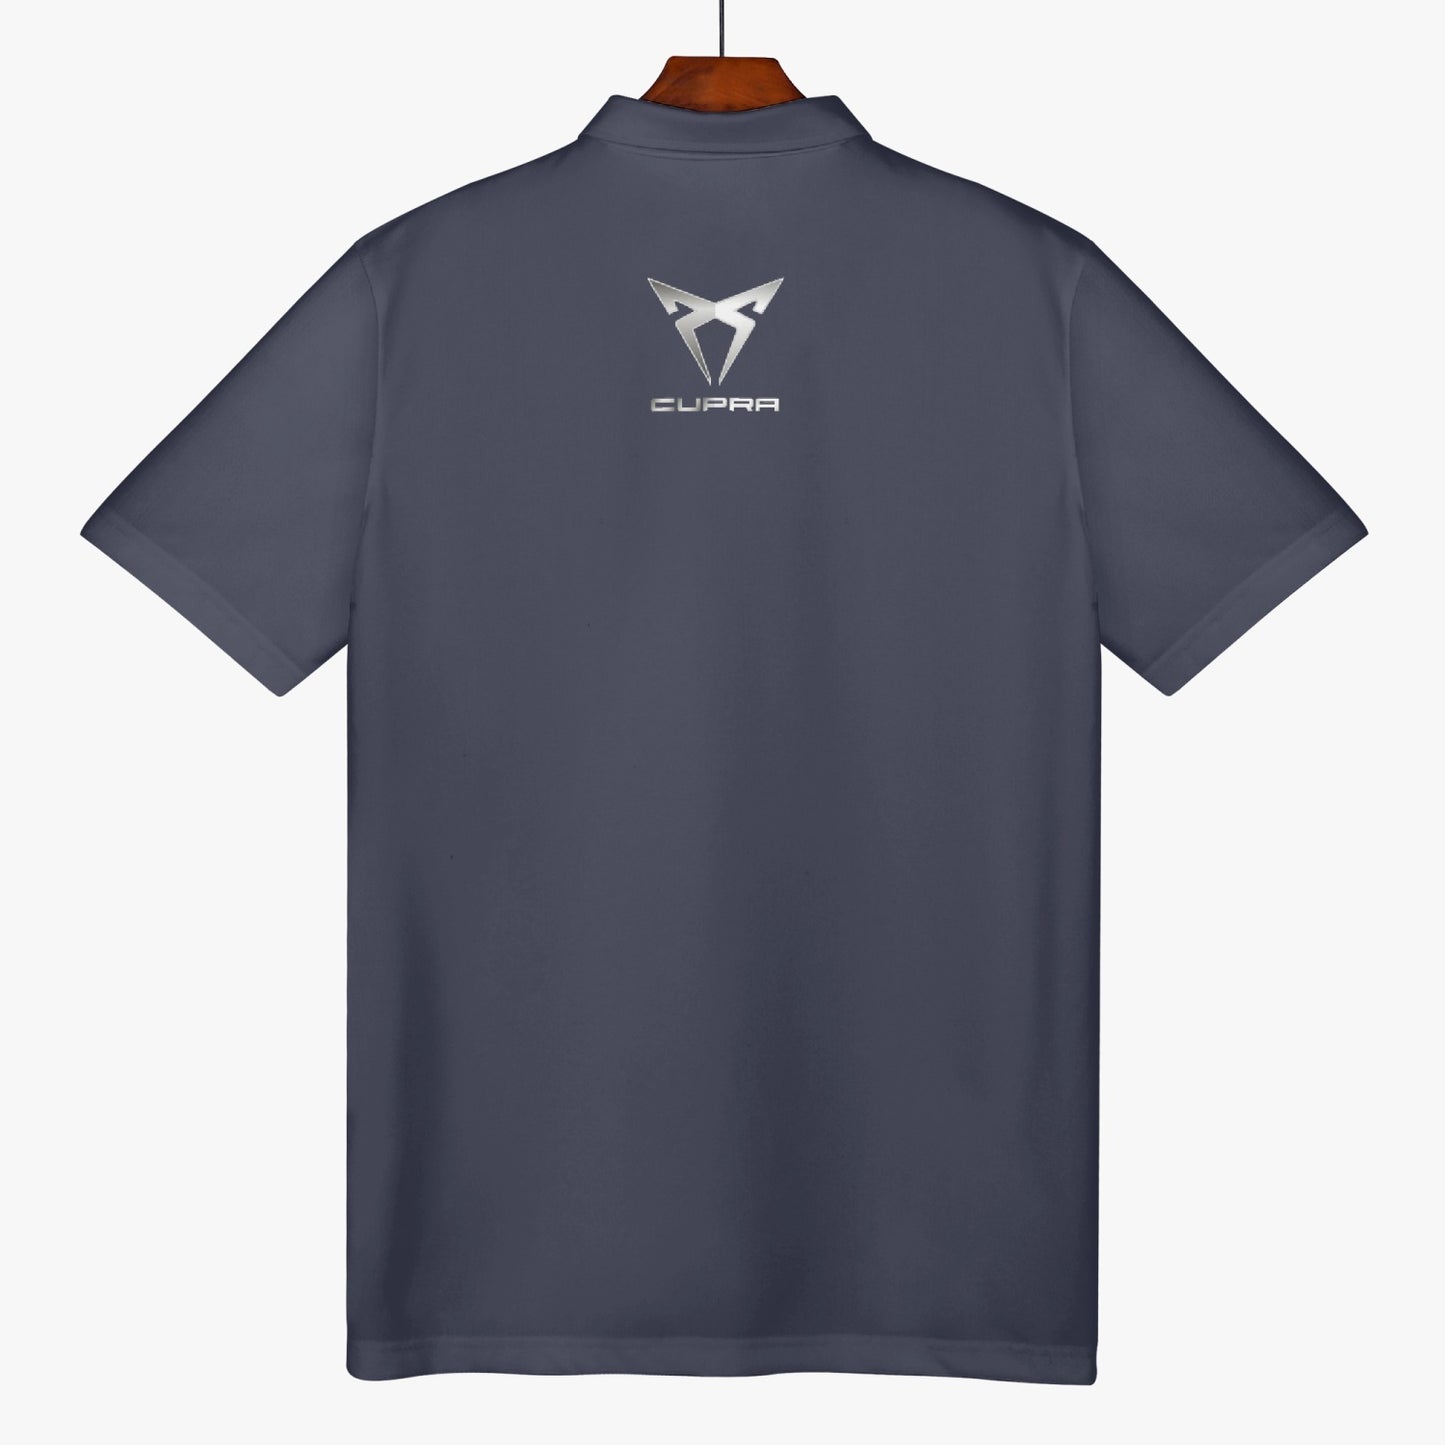 MICHAEL CLEMENTE 15 Activewear Polo Shirt - Titanium